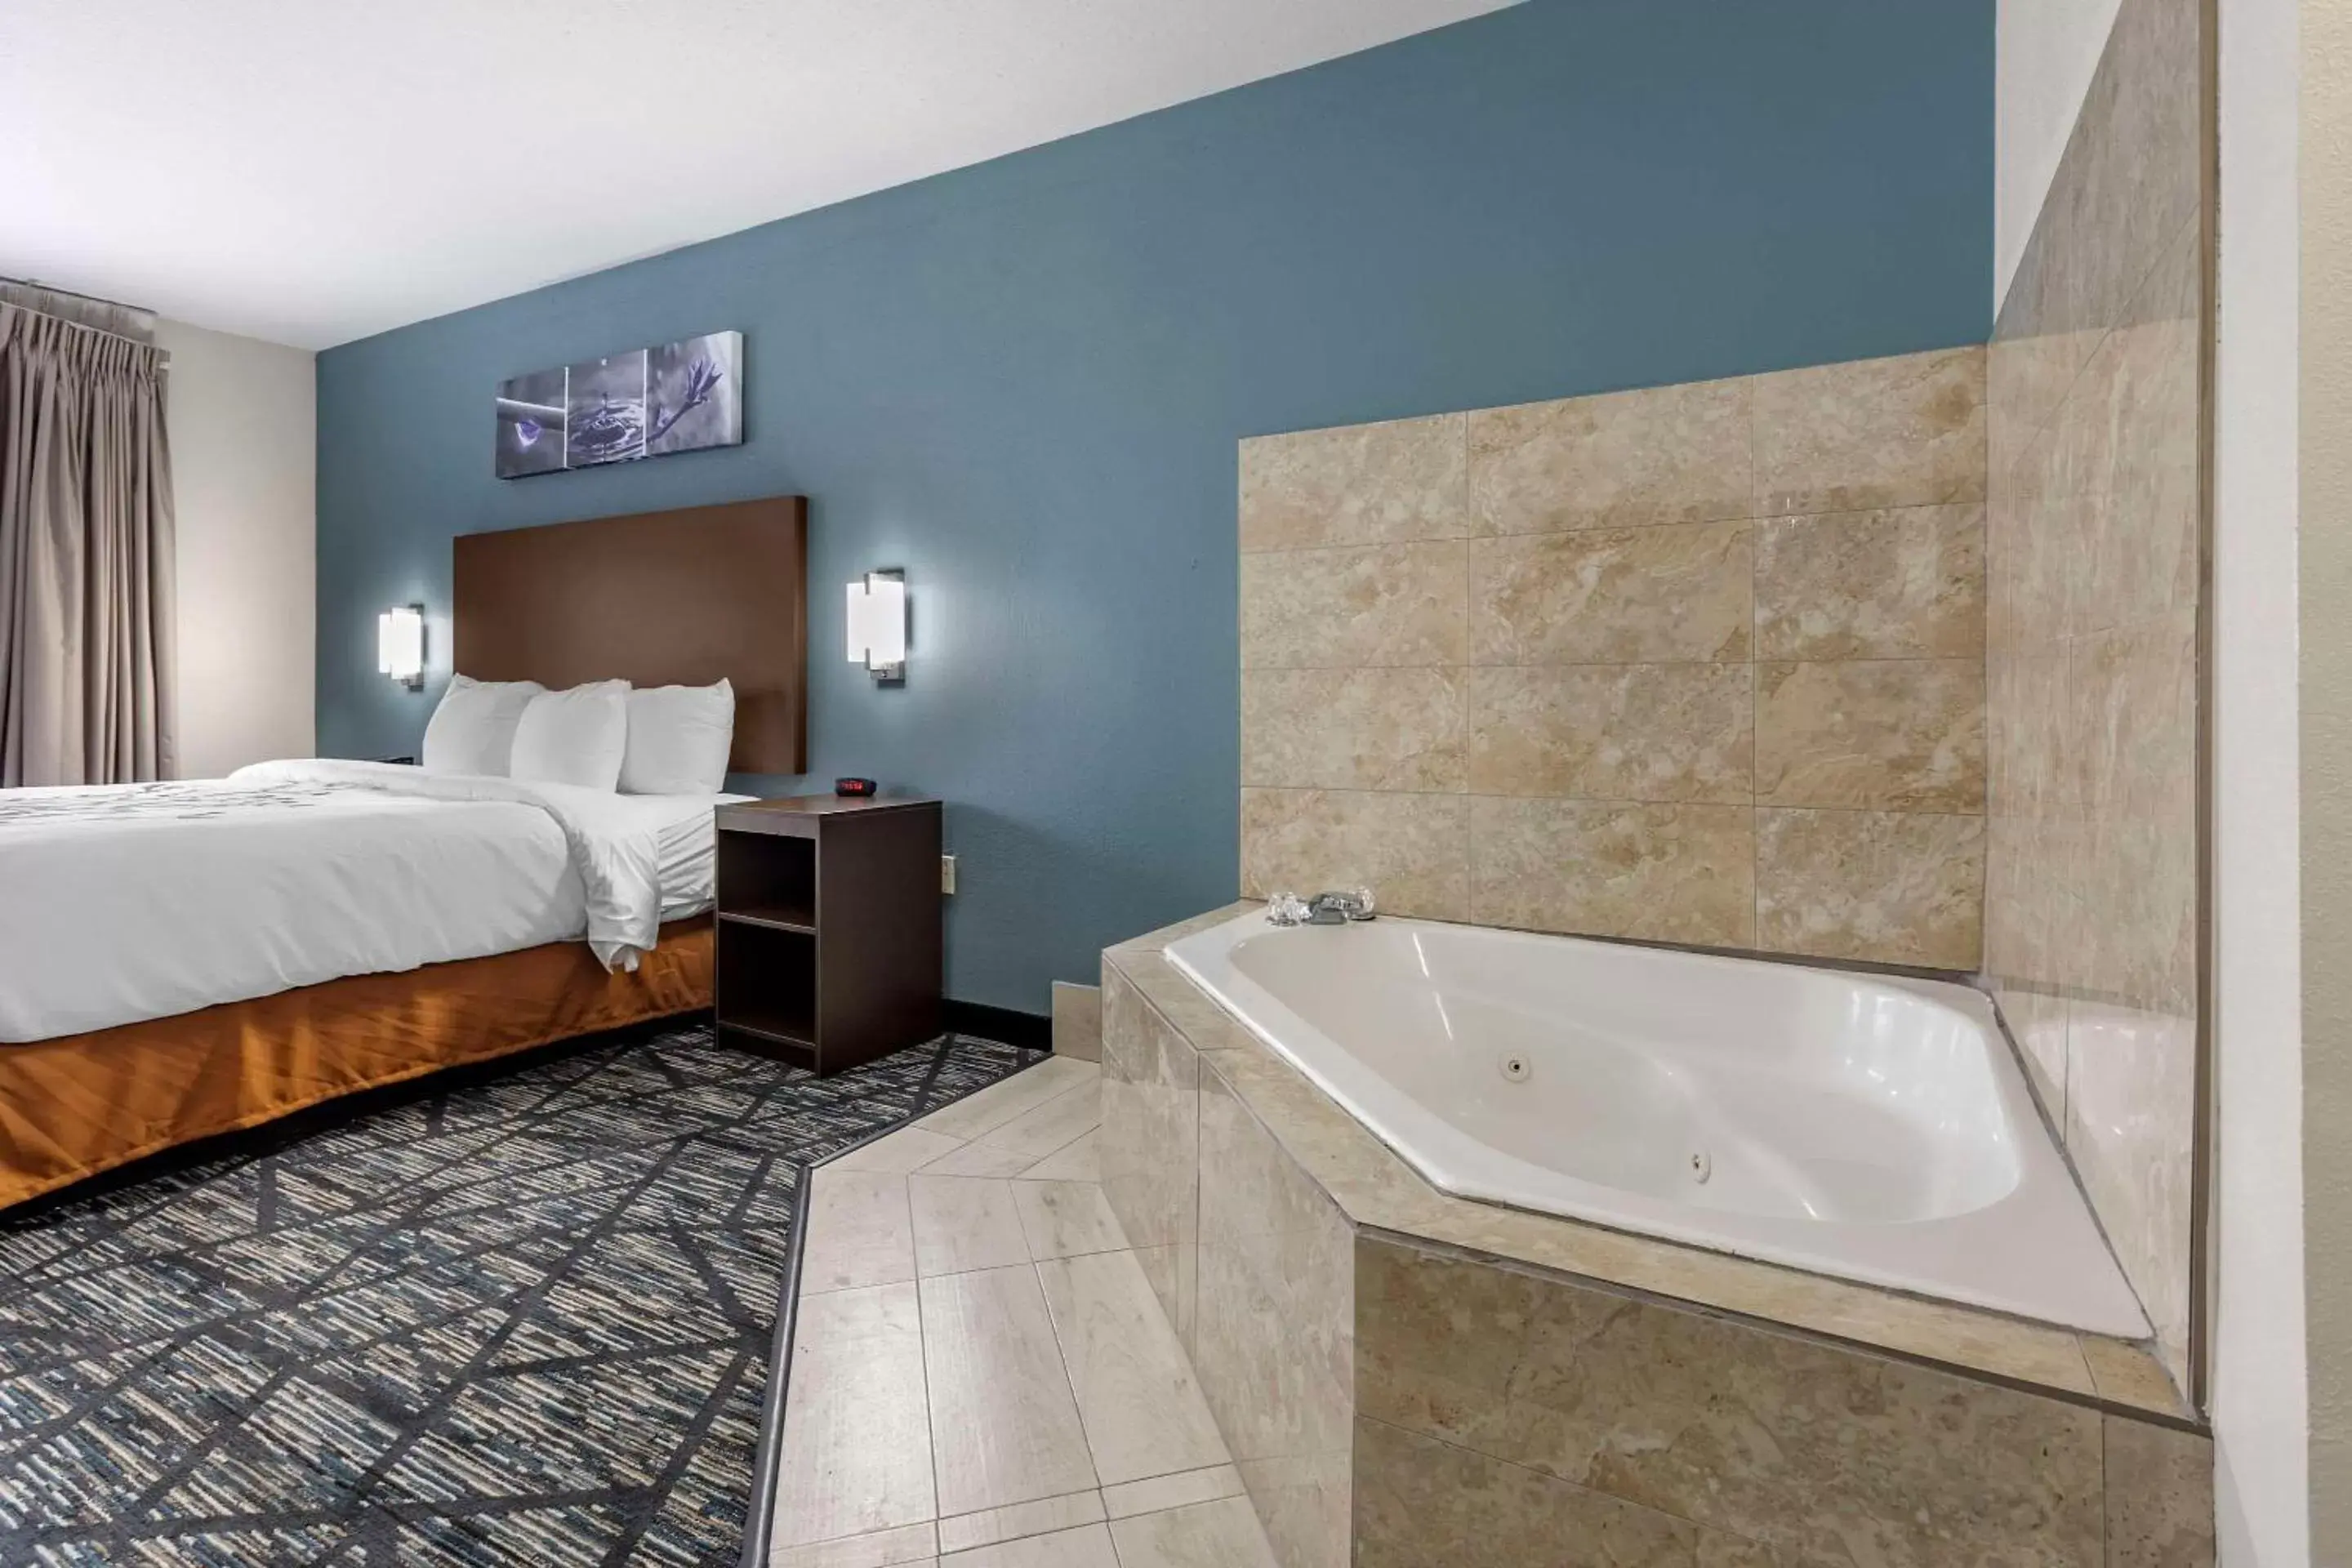 Bedroom, Bathroom in Sleep Inn & Suites